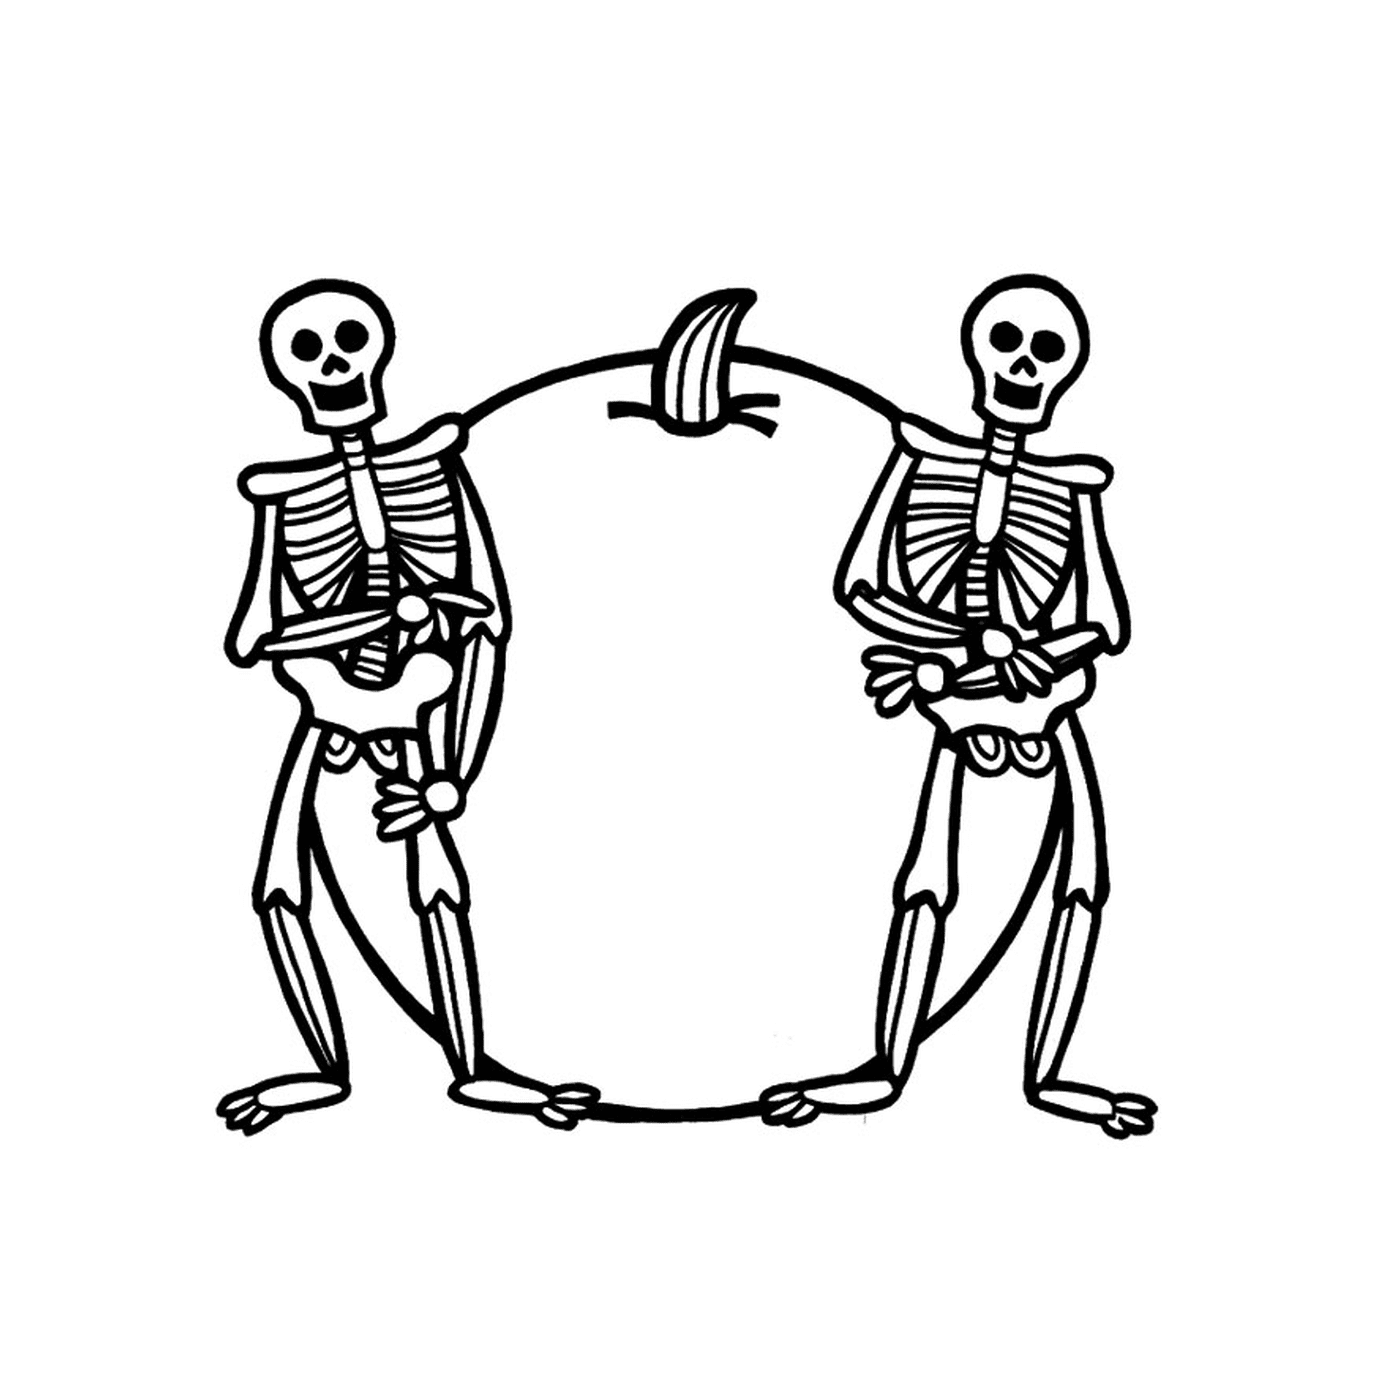  Два скелета рядом с яблоком 